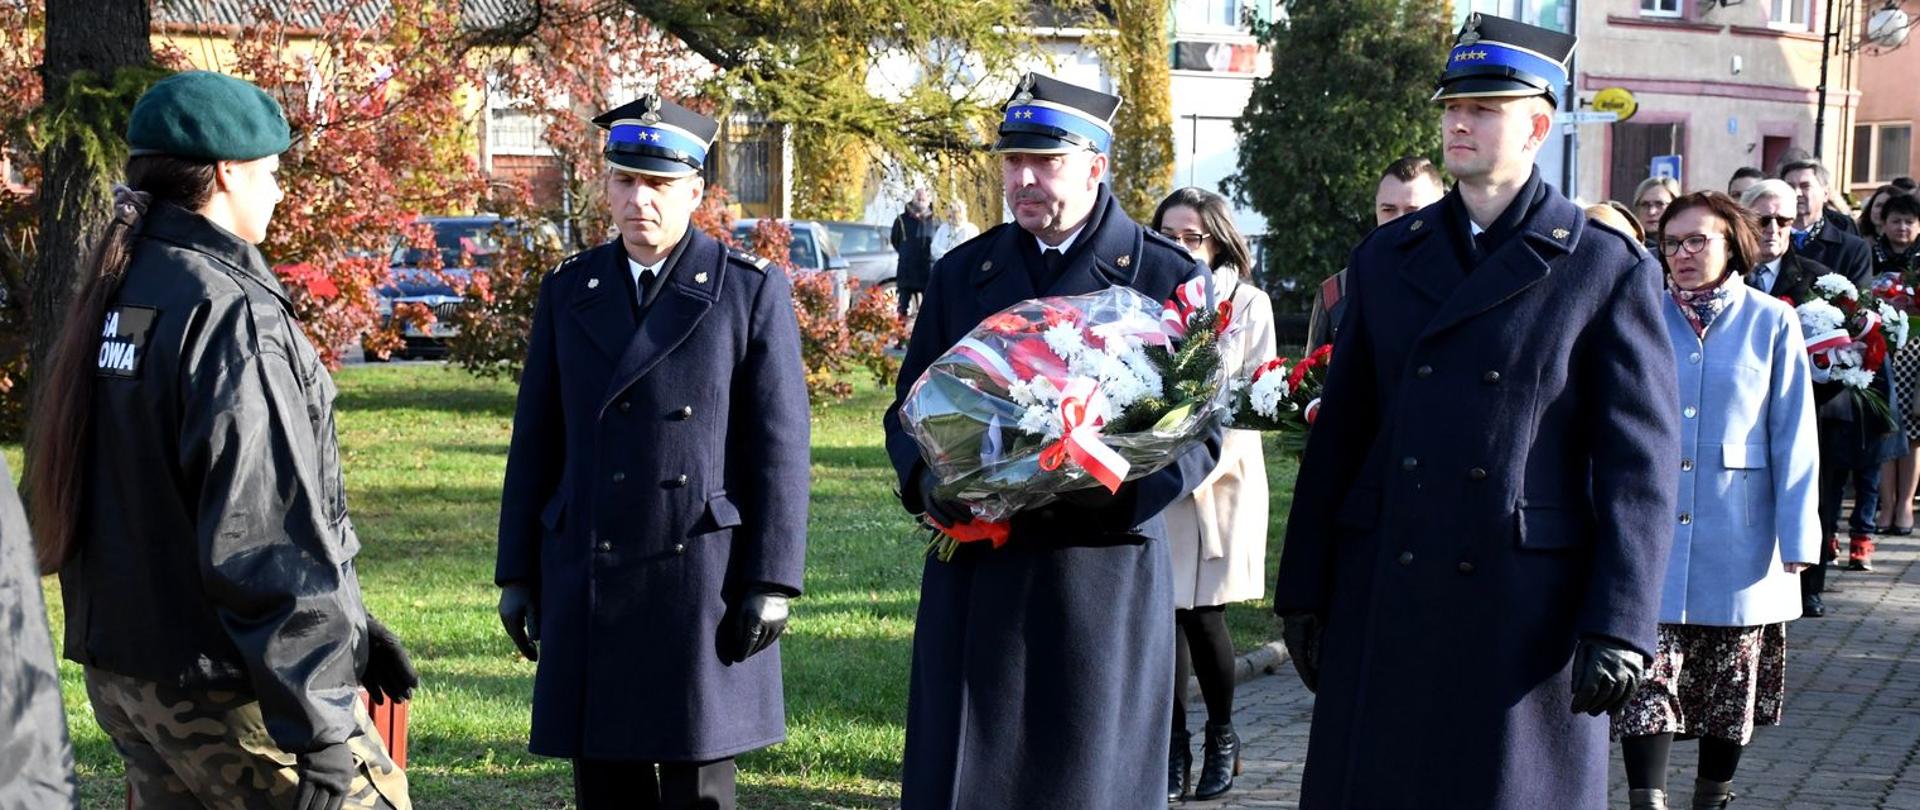 Na zdjęciu trzej strażacy ubrani w płaszcze zimowe, na głowach czapki rogatywki, stoją przed pomnikiem. Jeden ze strażaków trzyma wiązankę kwiatów.